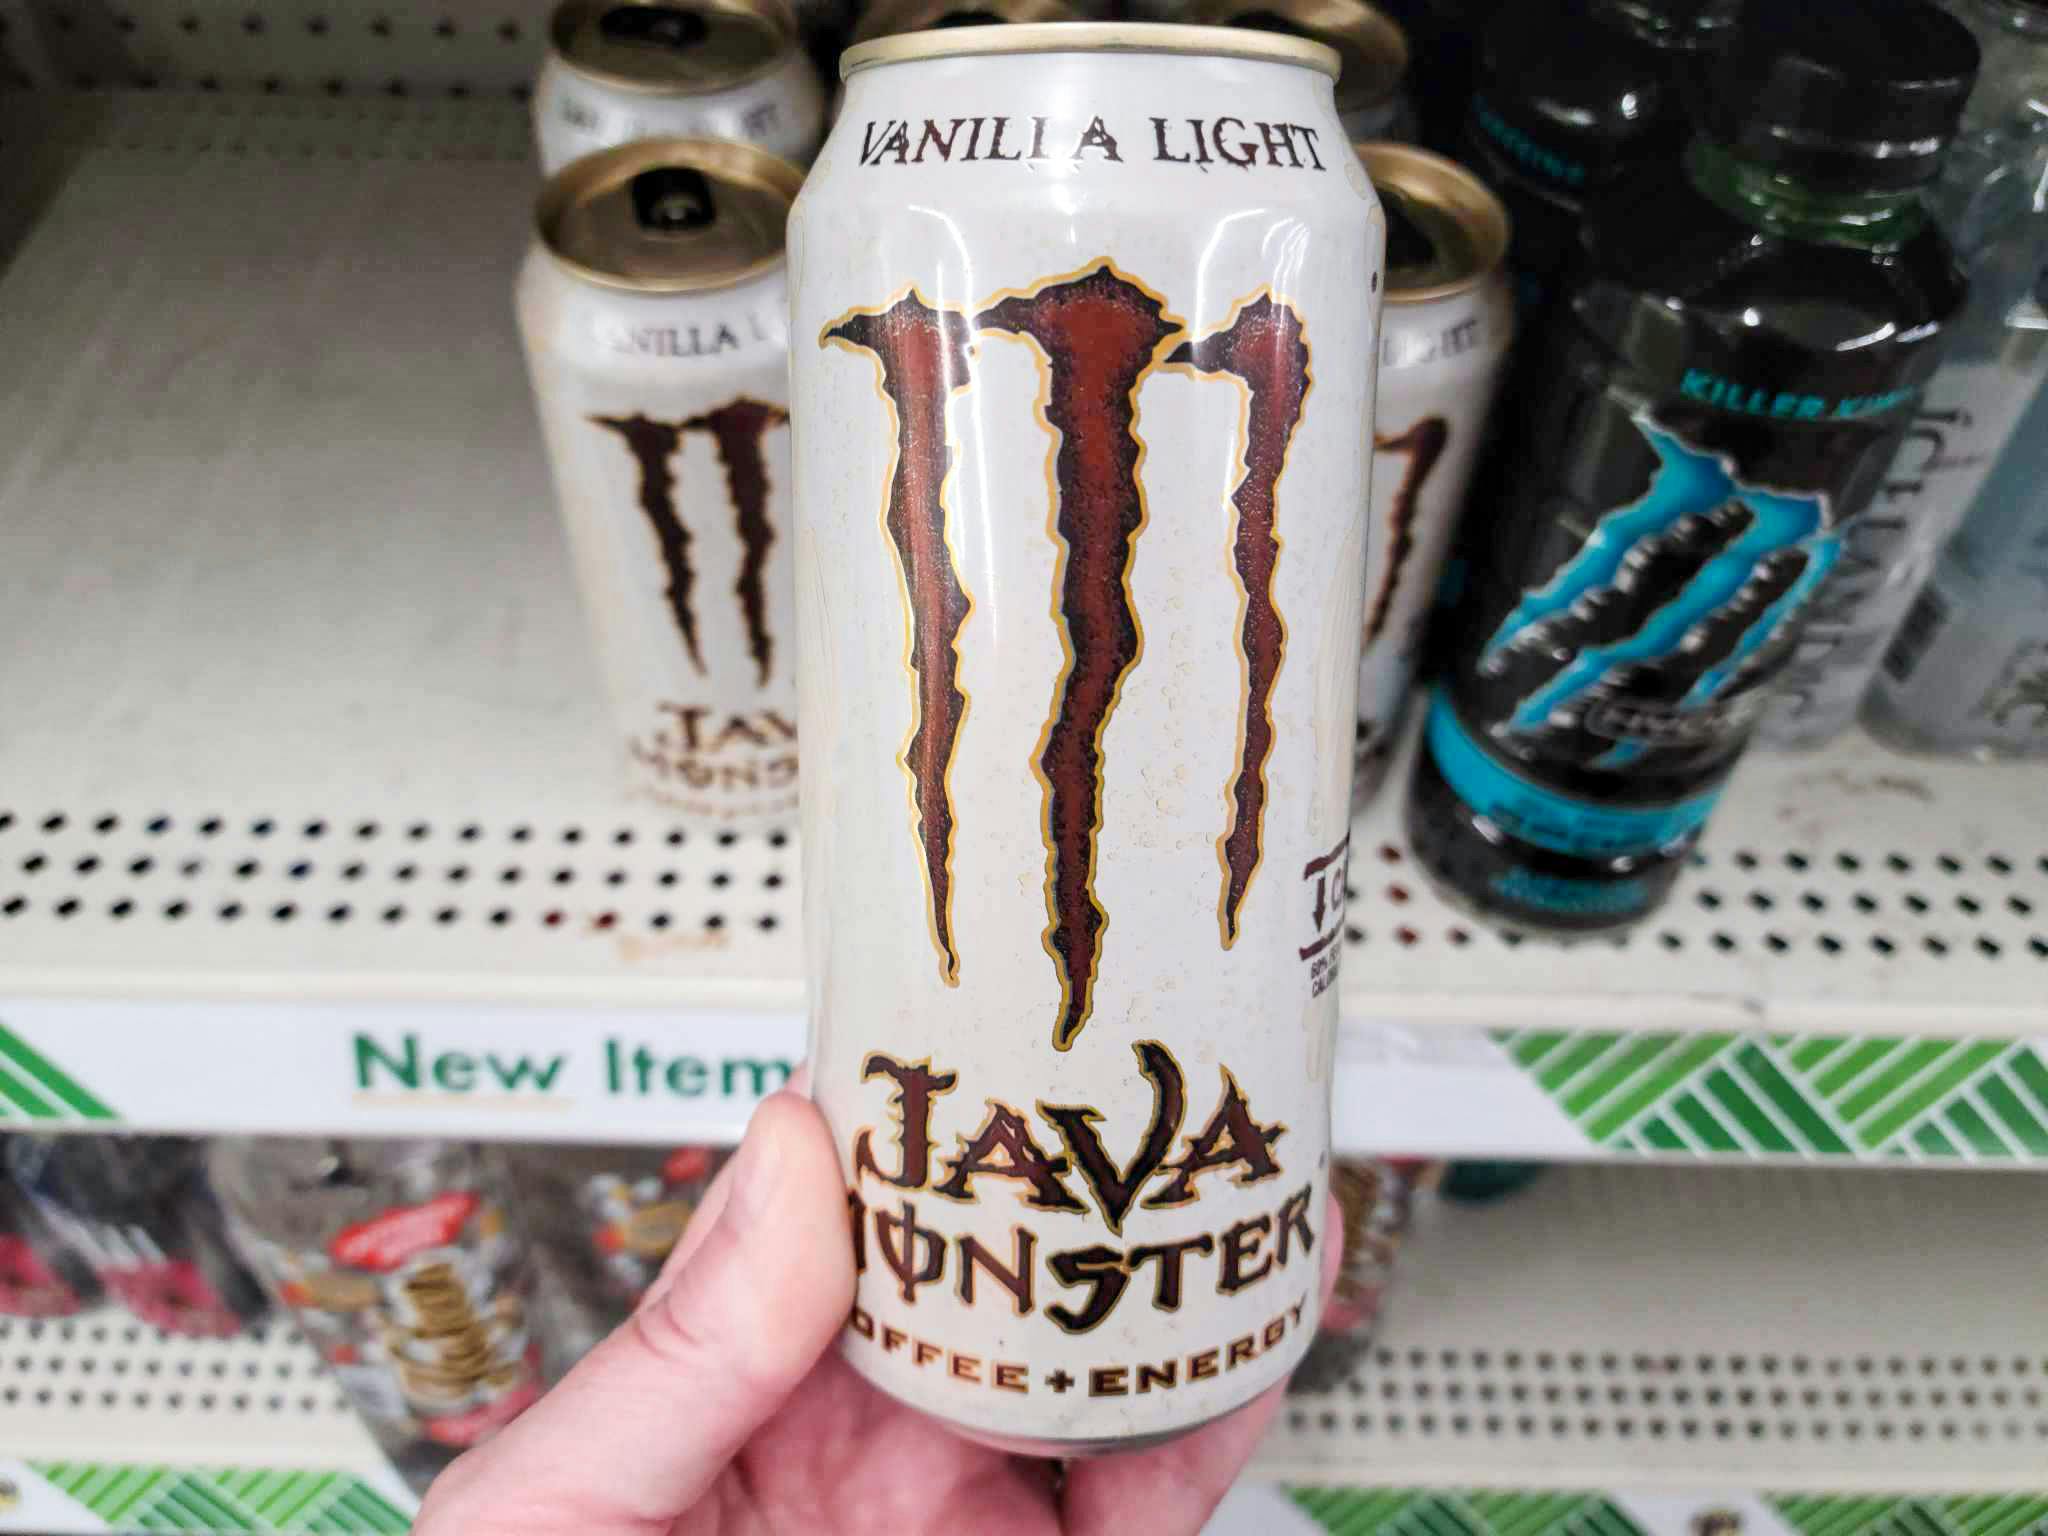 energy monster drink